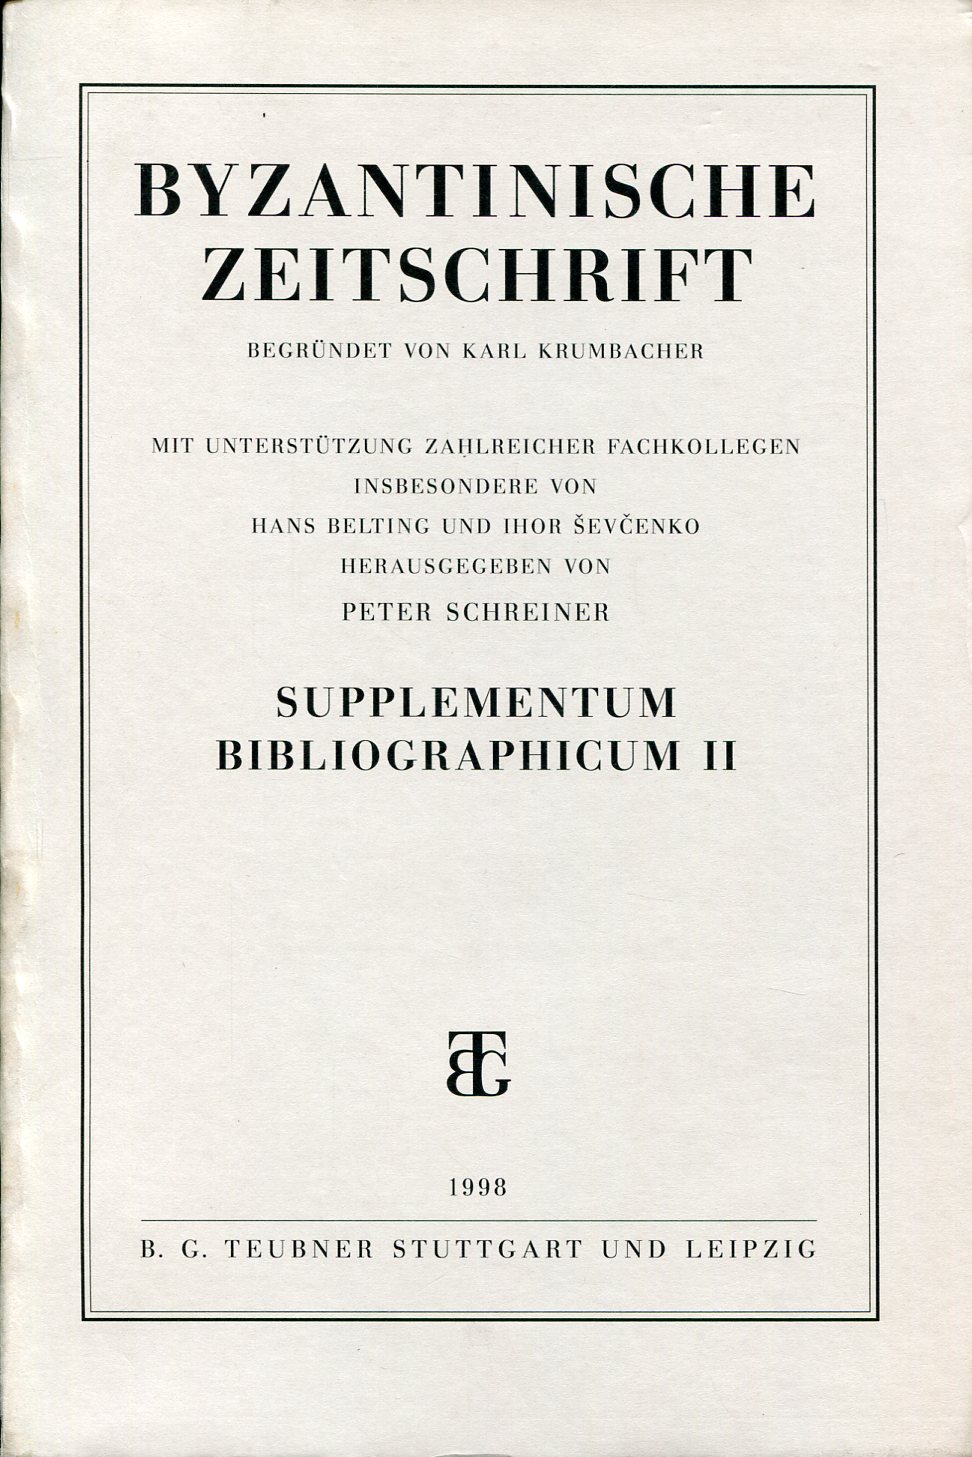 BYZANTINISCHE ZEITSCHRIFT SUPPLEMENTUM BIBLIOGRAPHICUM II